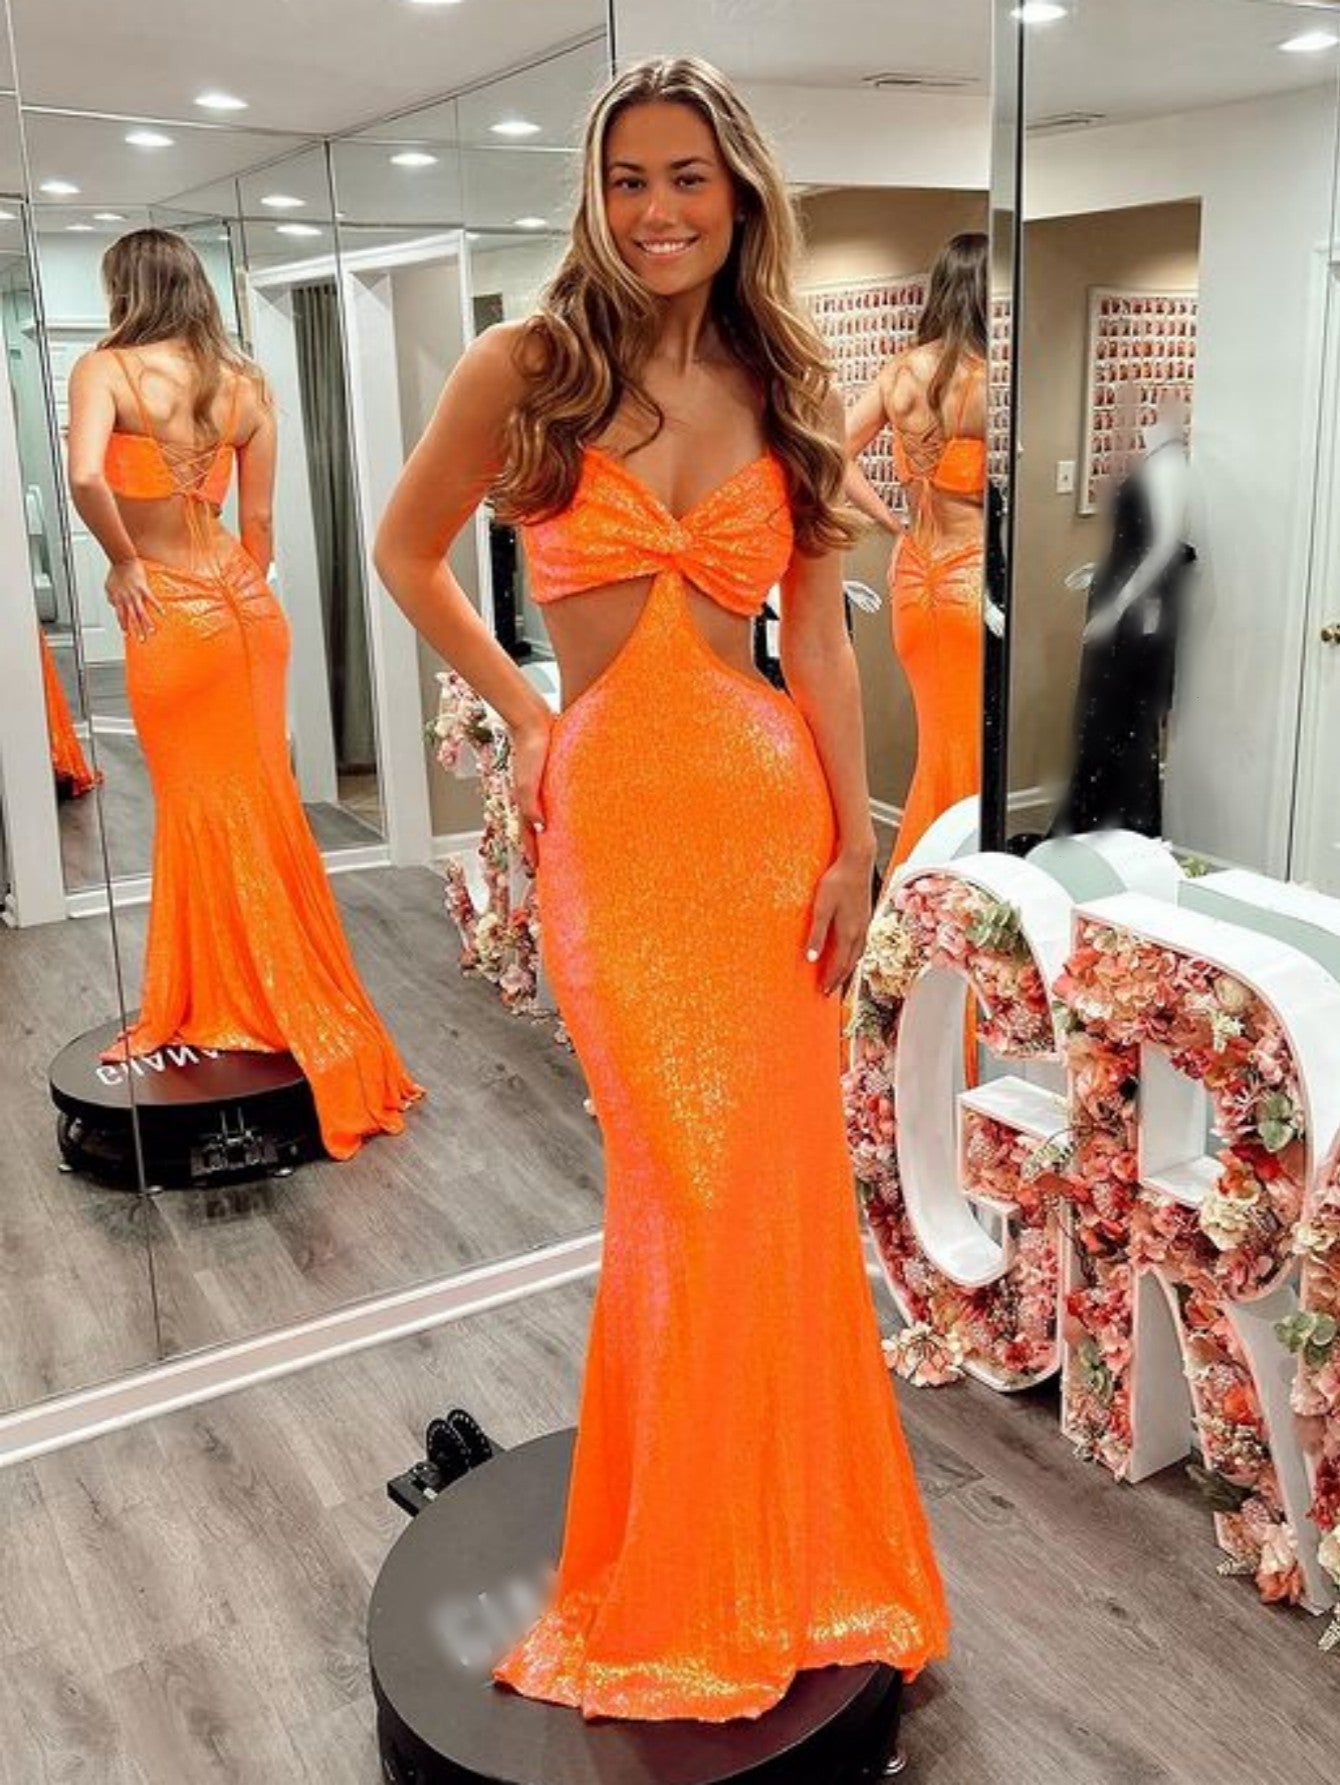 Memaid Sparkly Orange Unique Cut Out Long Prom Dress